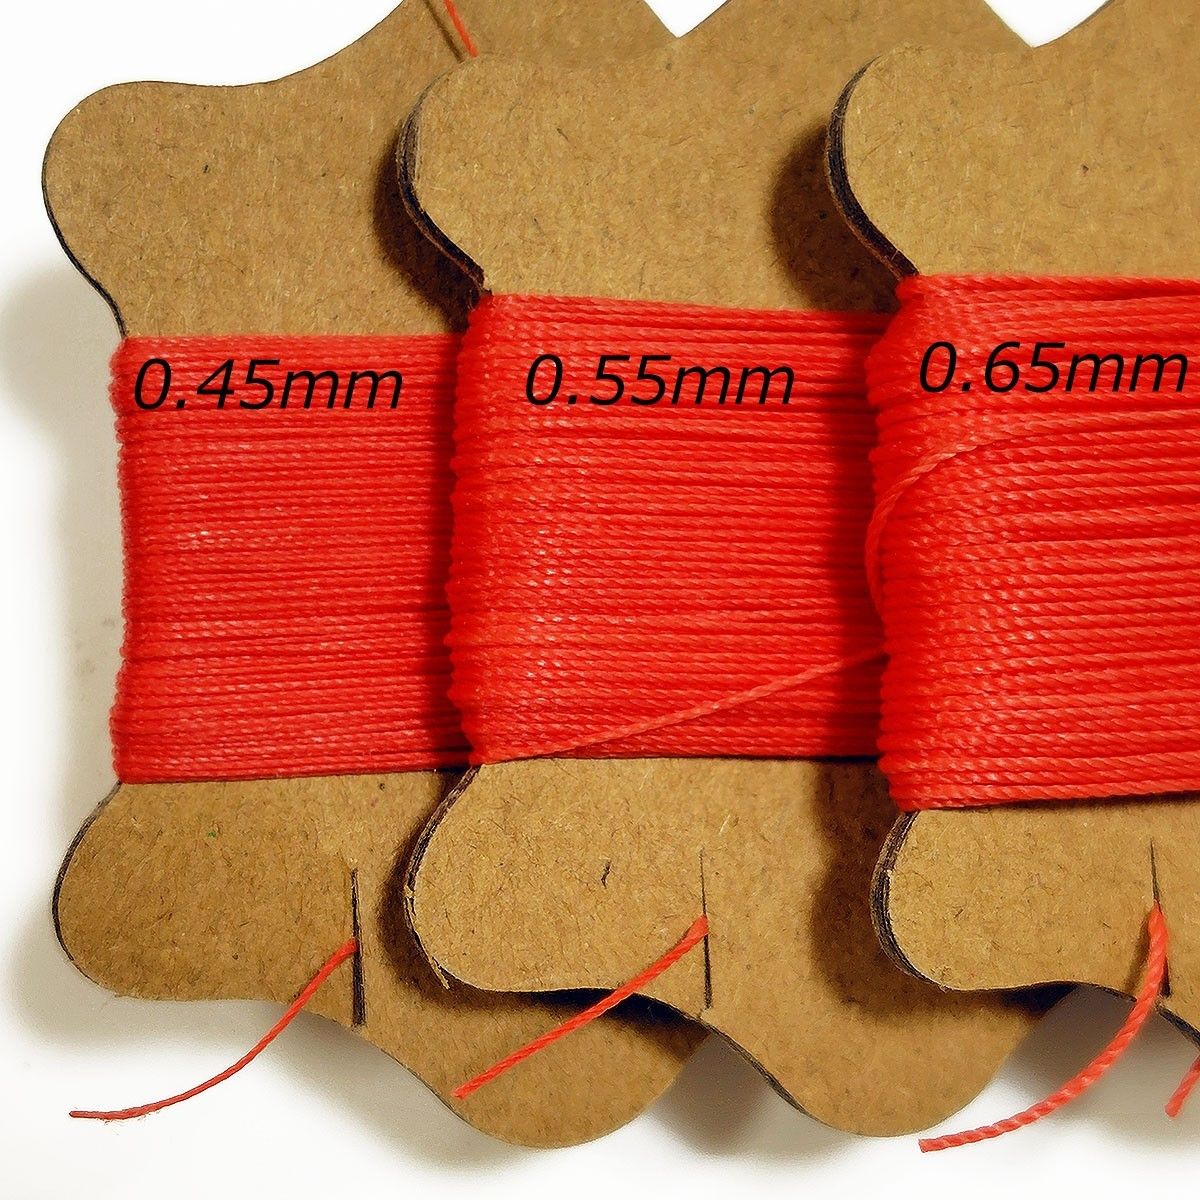 ロウビキ糸 手縫い糸 0.55mm レッド 赤 1個 レザークラフト 糸 丸紐 ワックスコード 蝋引き ポリエステル ロウ引き